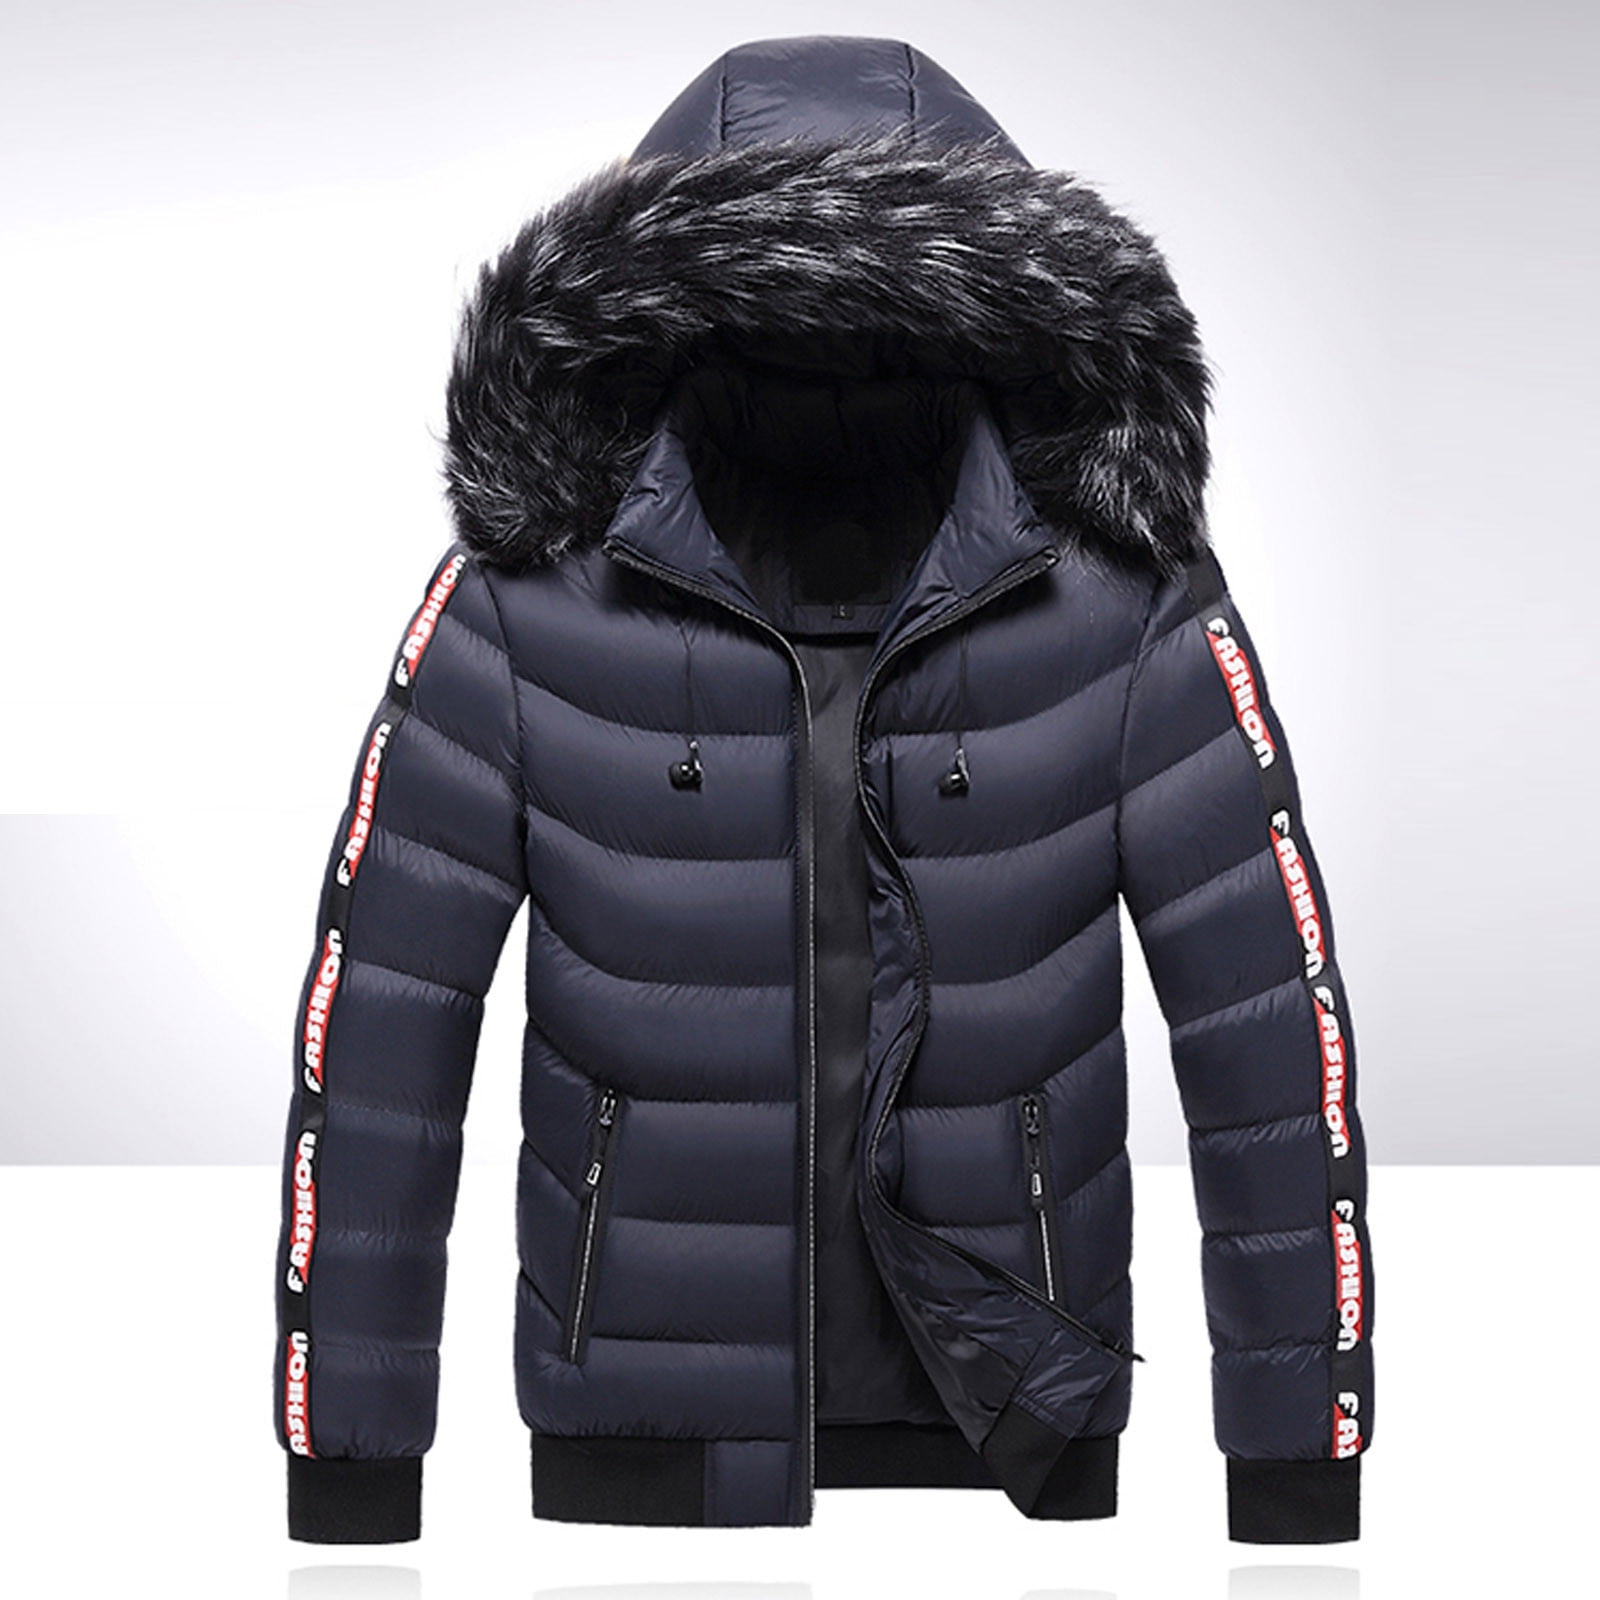 Aayomet Winter Coats For Men Big And Tall Men's Lightweight Packable ...